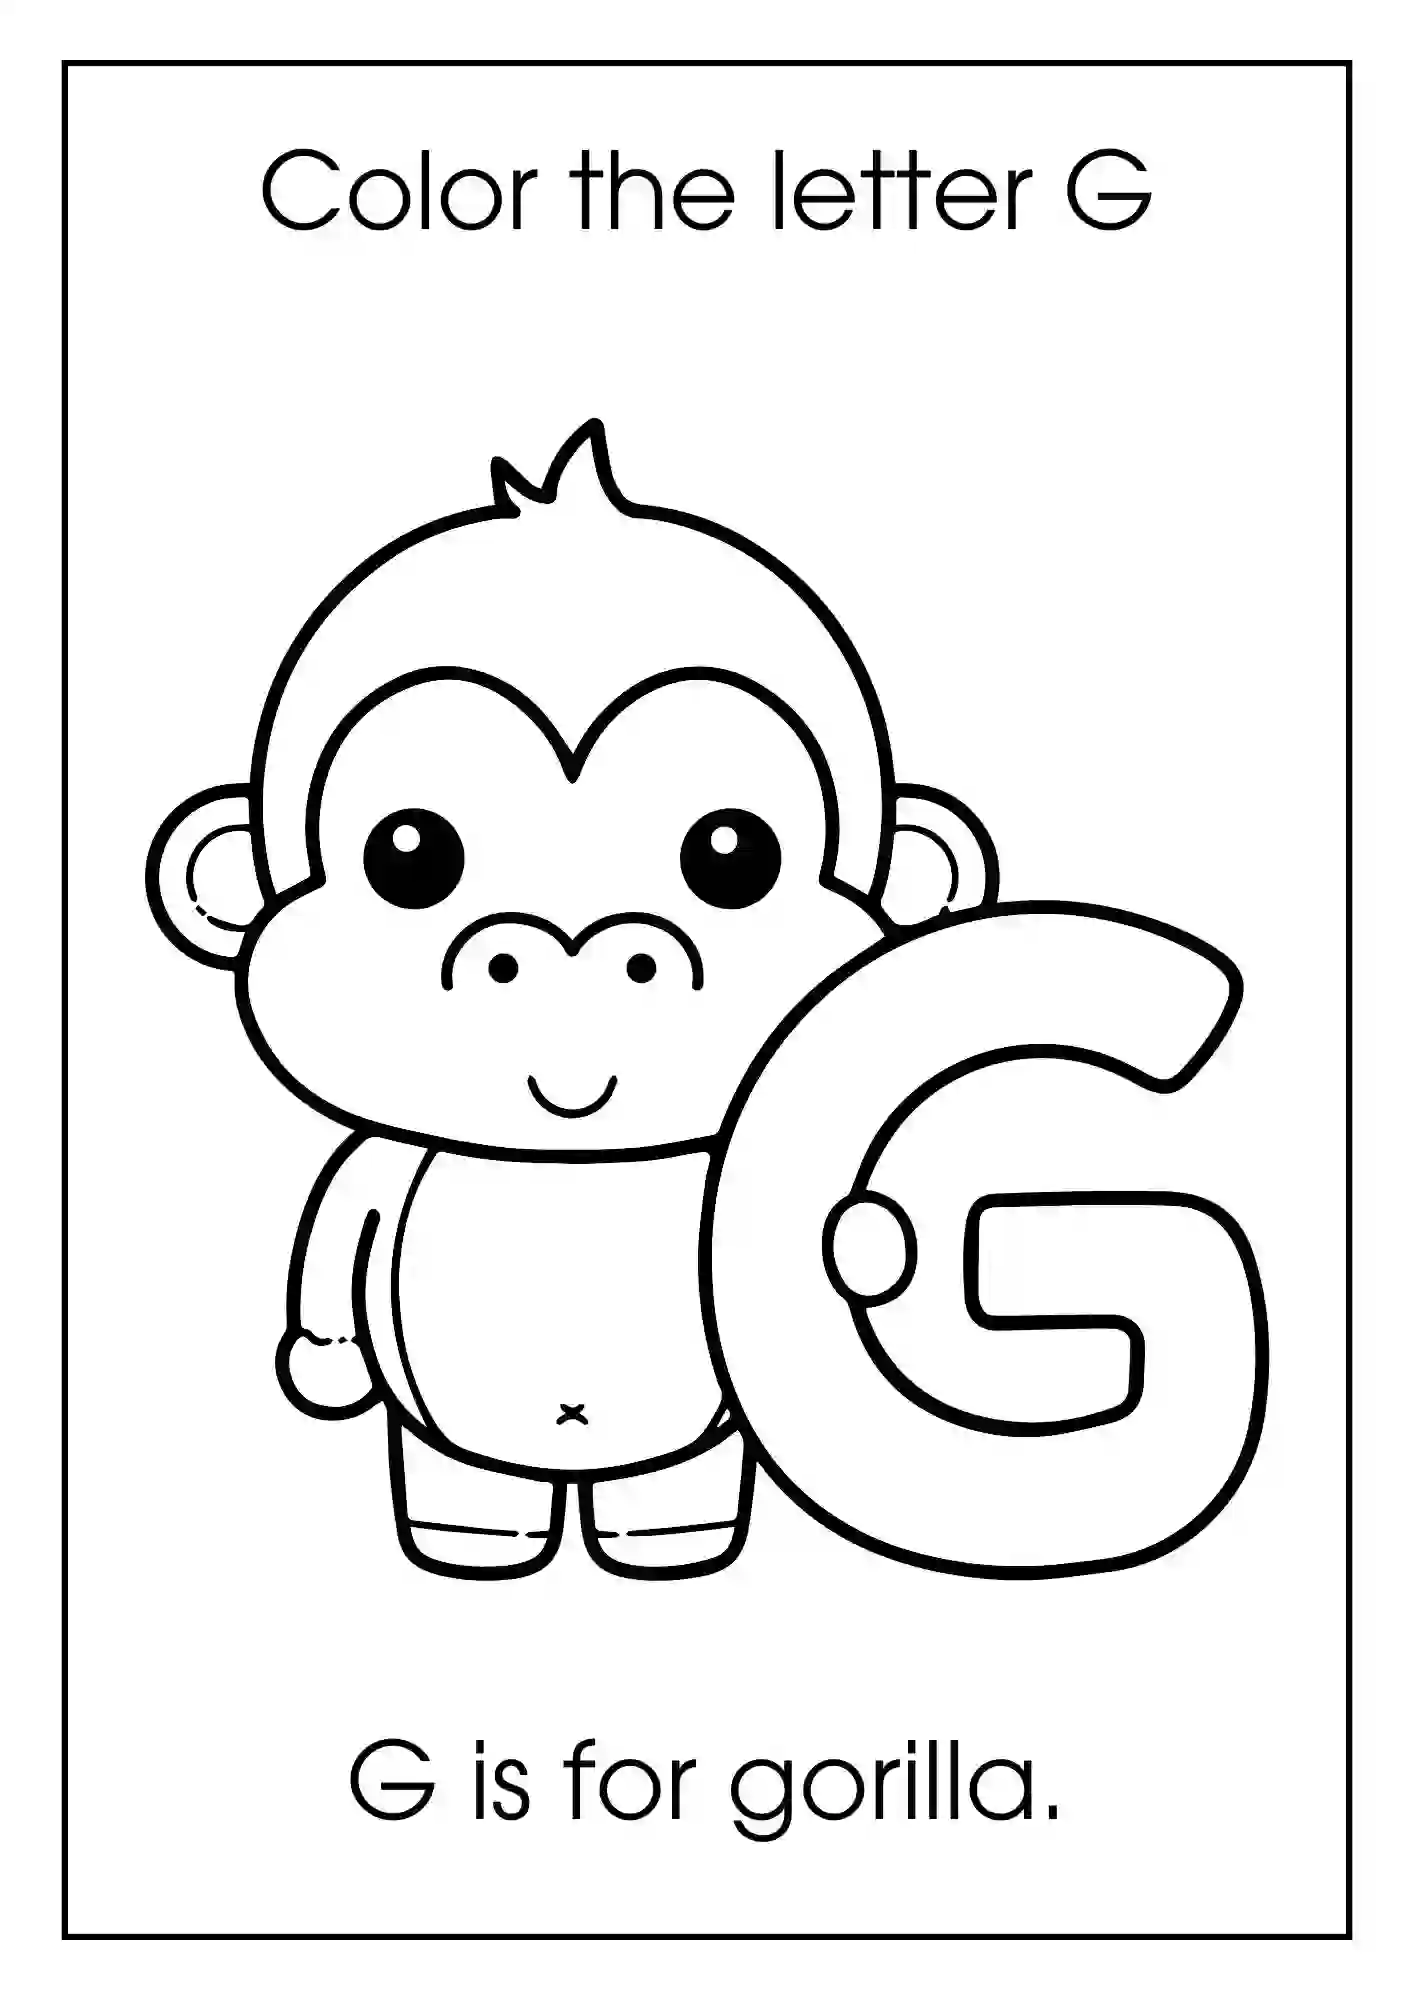 Animal Alphabet Coloring Worksheets For Kindergarten (Letter g with gorilla)